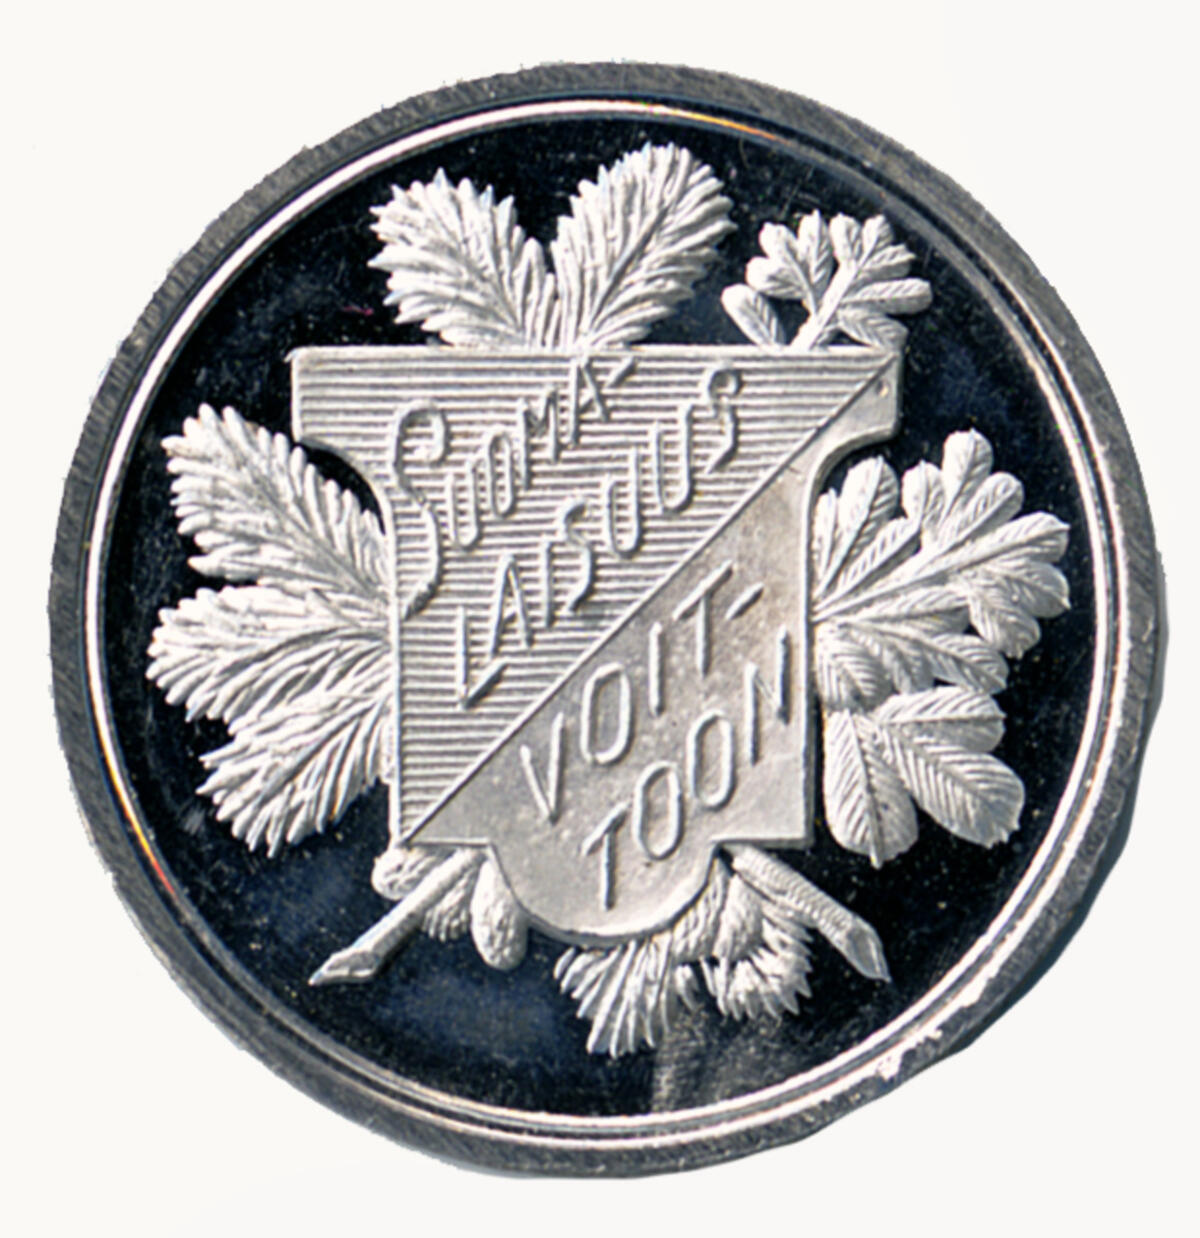 Baksidan av den silverfärgade medaljen. En vapelsköld med texten SUOMALAISUUS VOITTOON